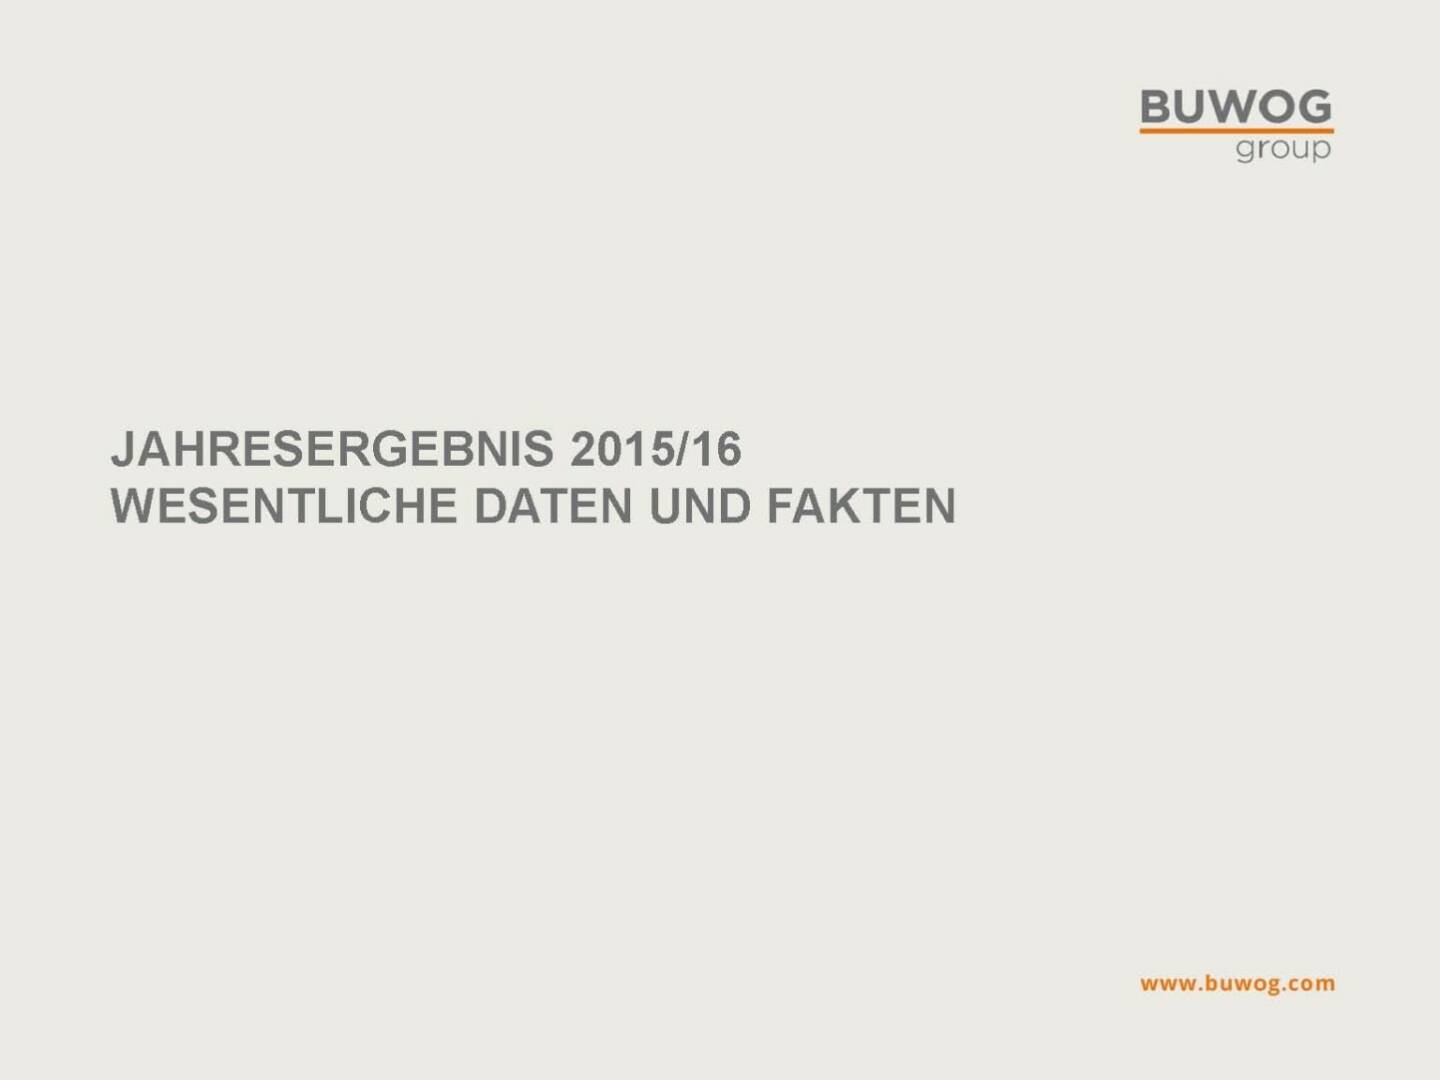 Buwog Group - Jahresergebnis 2015/16